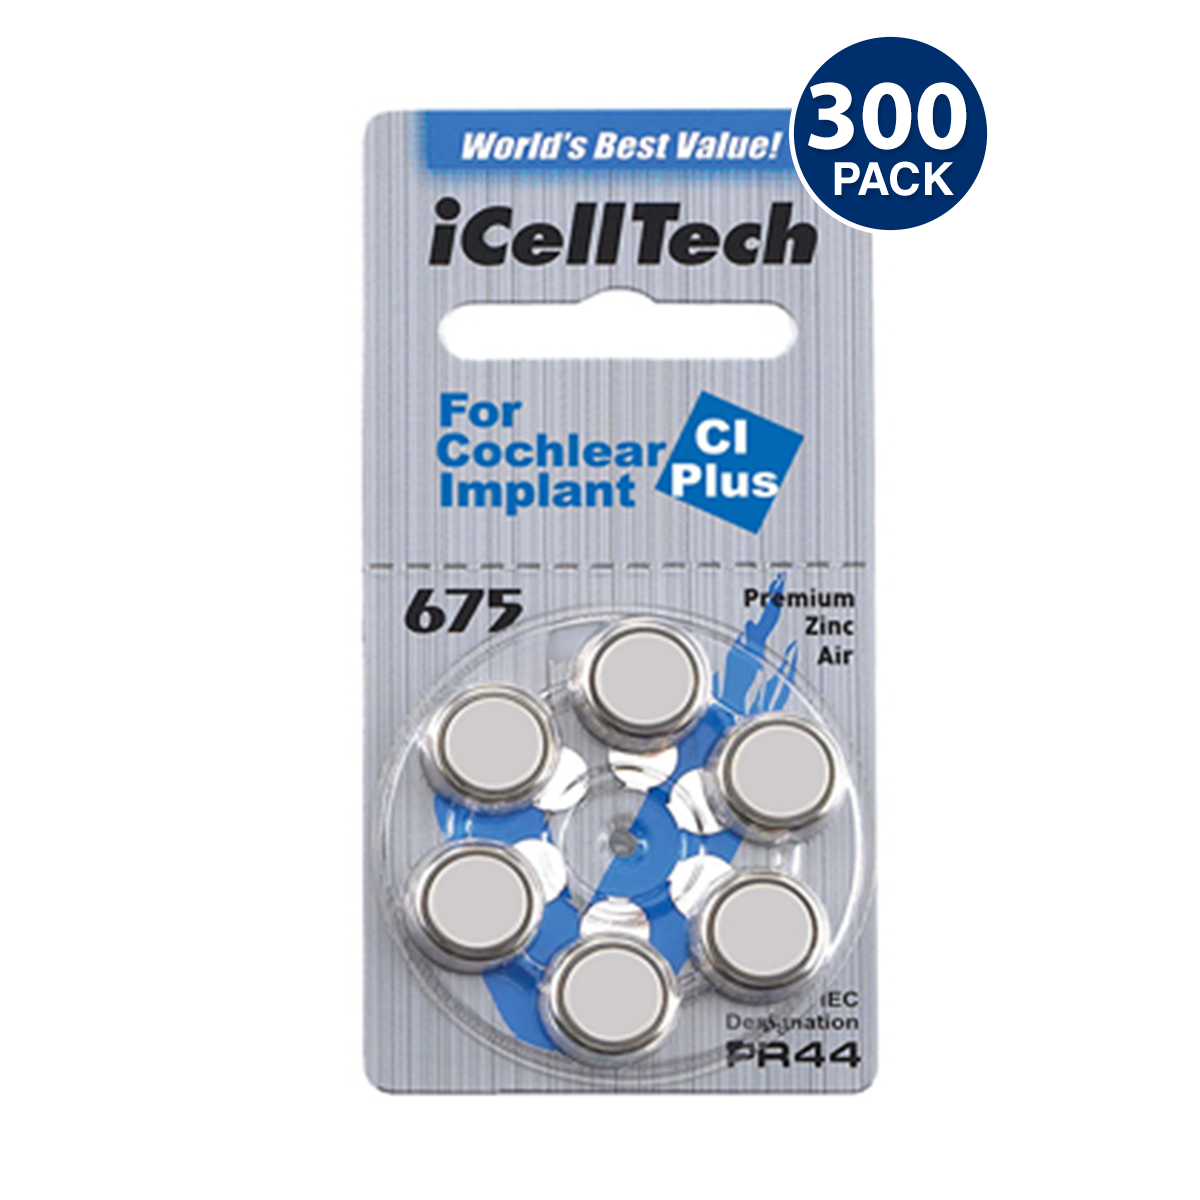 iCelltech Platinum Plus Size 675P Cochlear Implant Battery (300 pcs.)